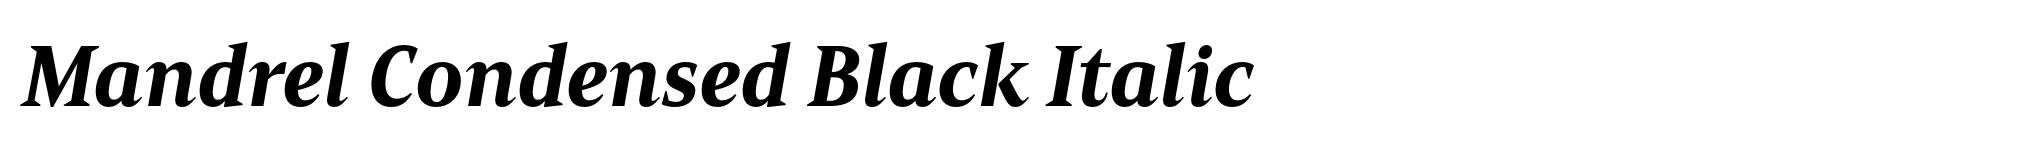 Mandrel Condensed Black Italic image